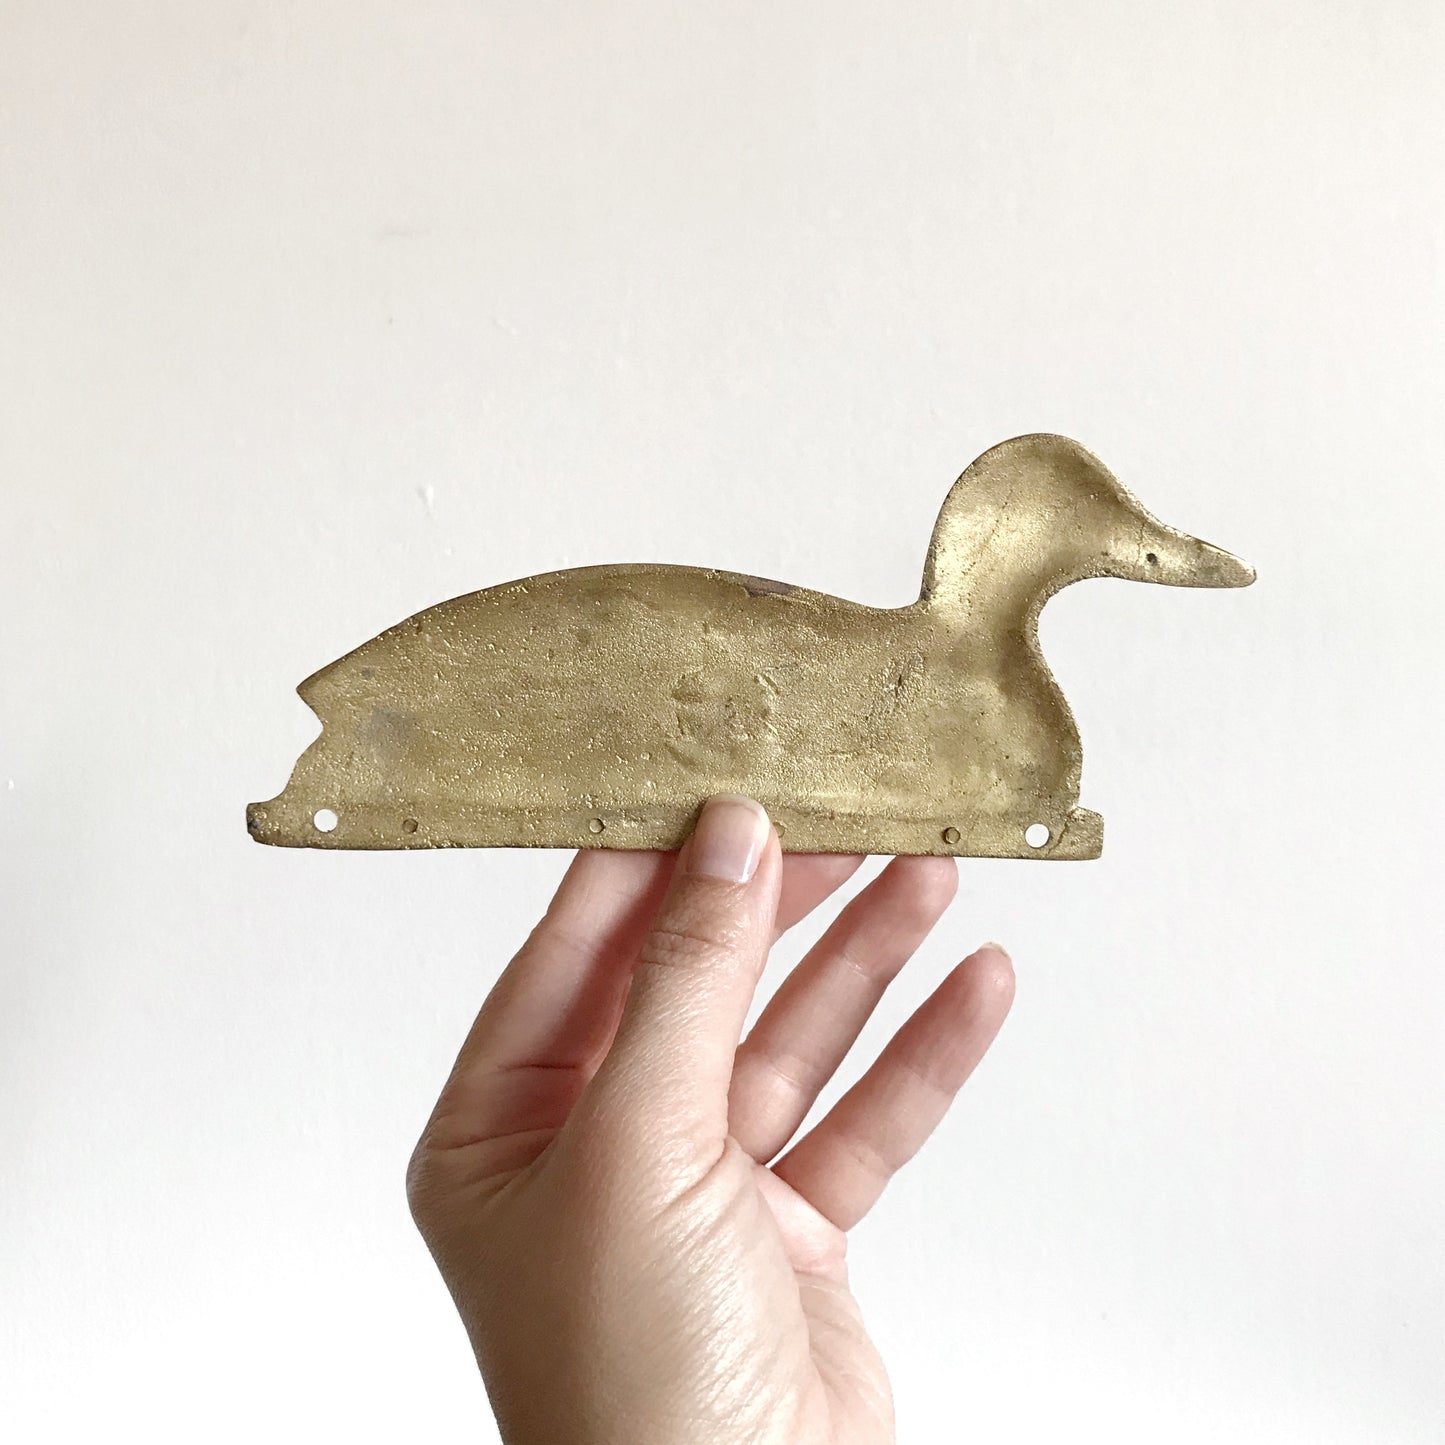 Vintage Brass Duck Key Holder